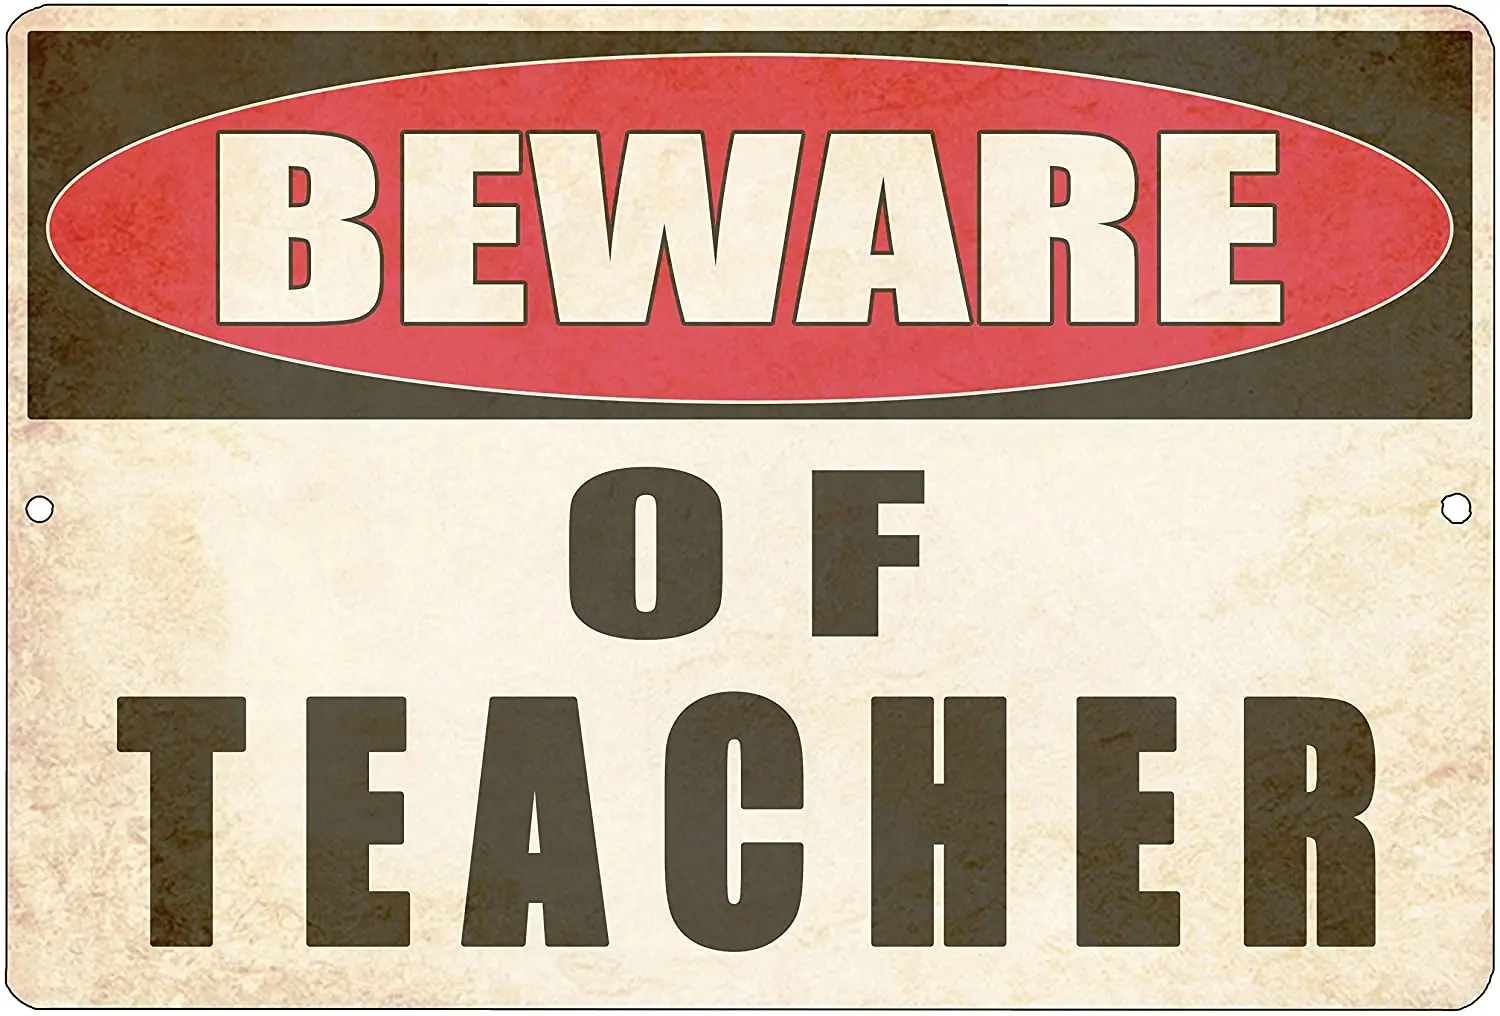 

Rogue River Тактический Забавный учитель дневной знак Настенный декор обучение класс Предупреждение Остерегайтесь учителя